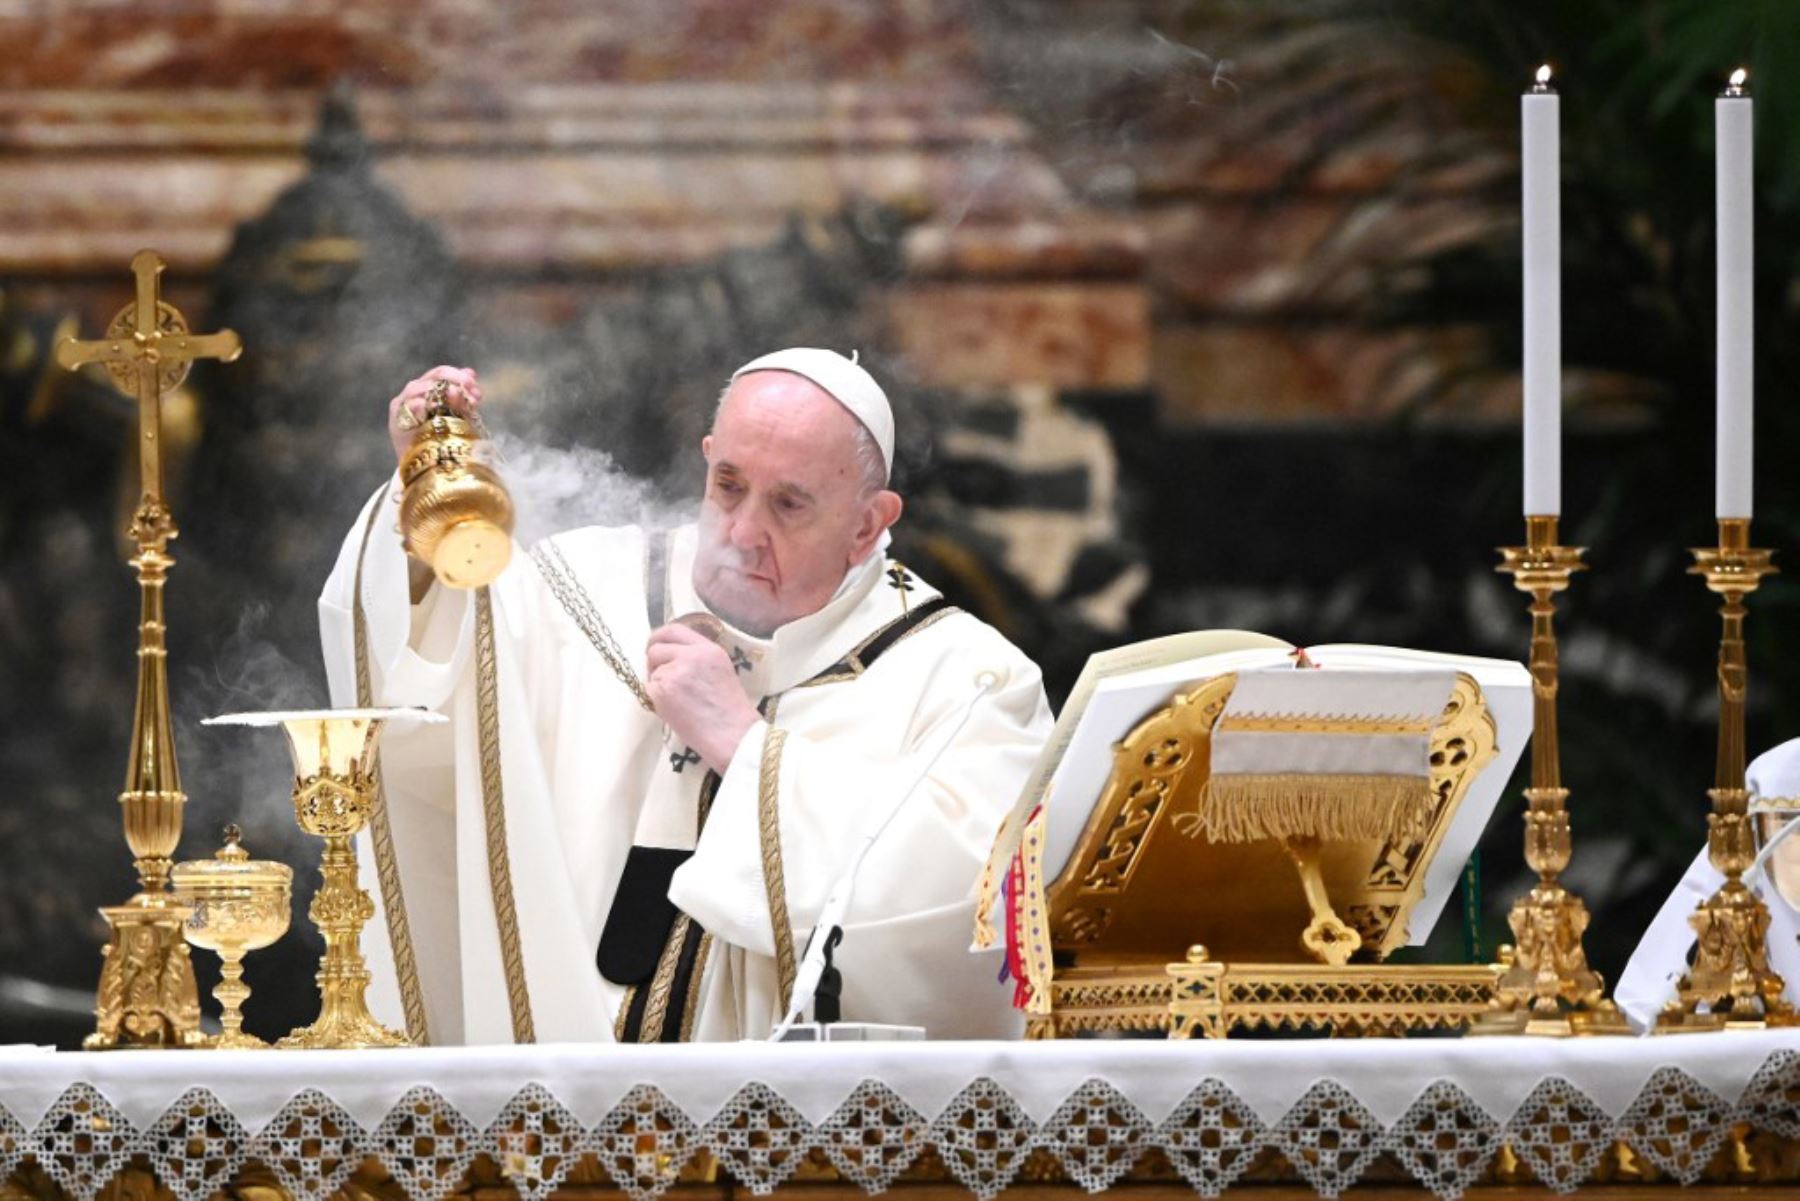 El Papa Francisco sostiene una hostia mientras lleva a cabo el rito de la comunión durante una misa de Nochebuena para conmemorar la natividad de Jesucristo, en la basílica de San Pedro en el Vaticano. Foto: AFP